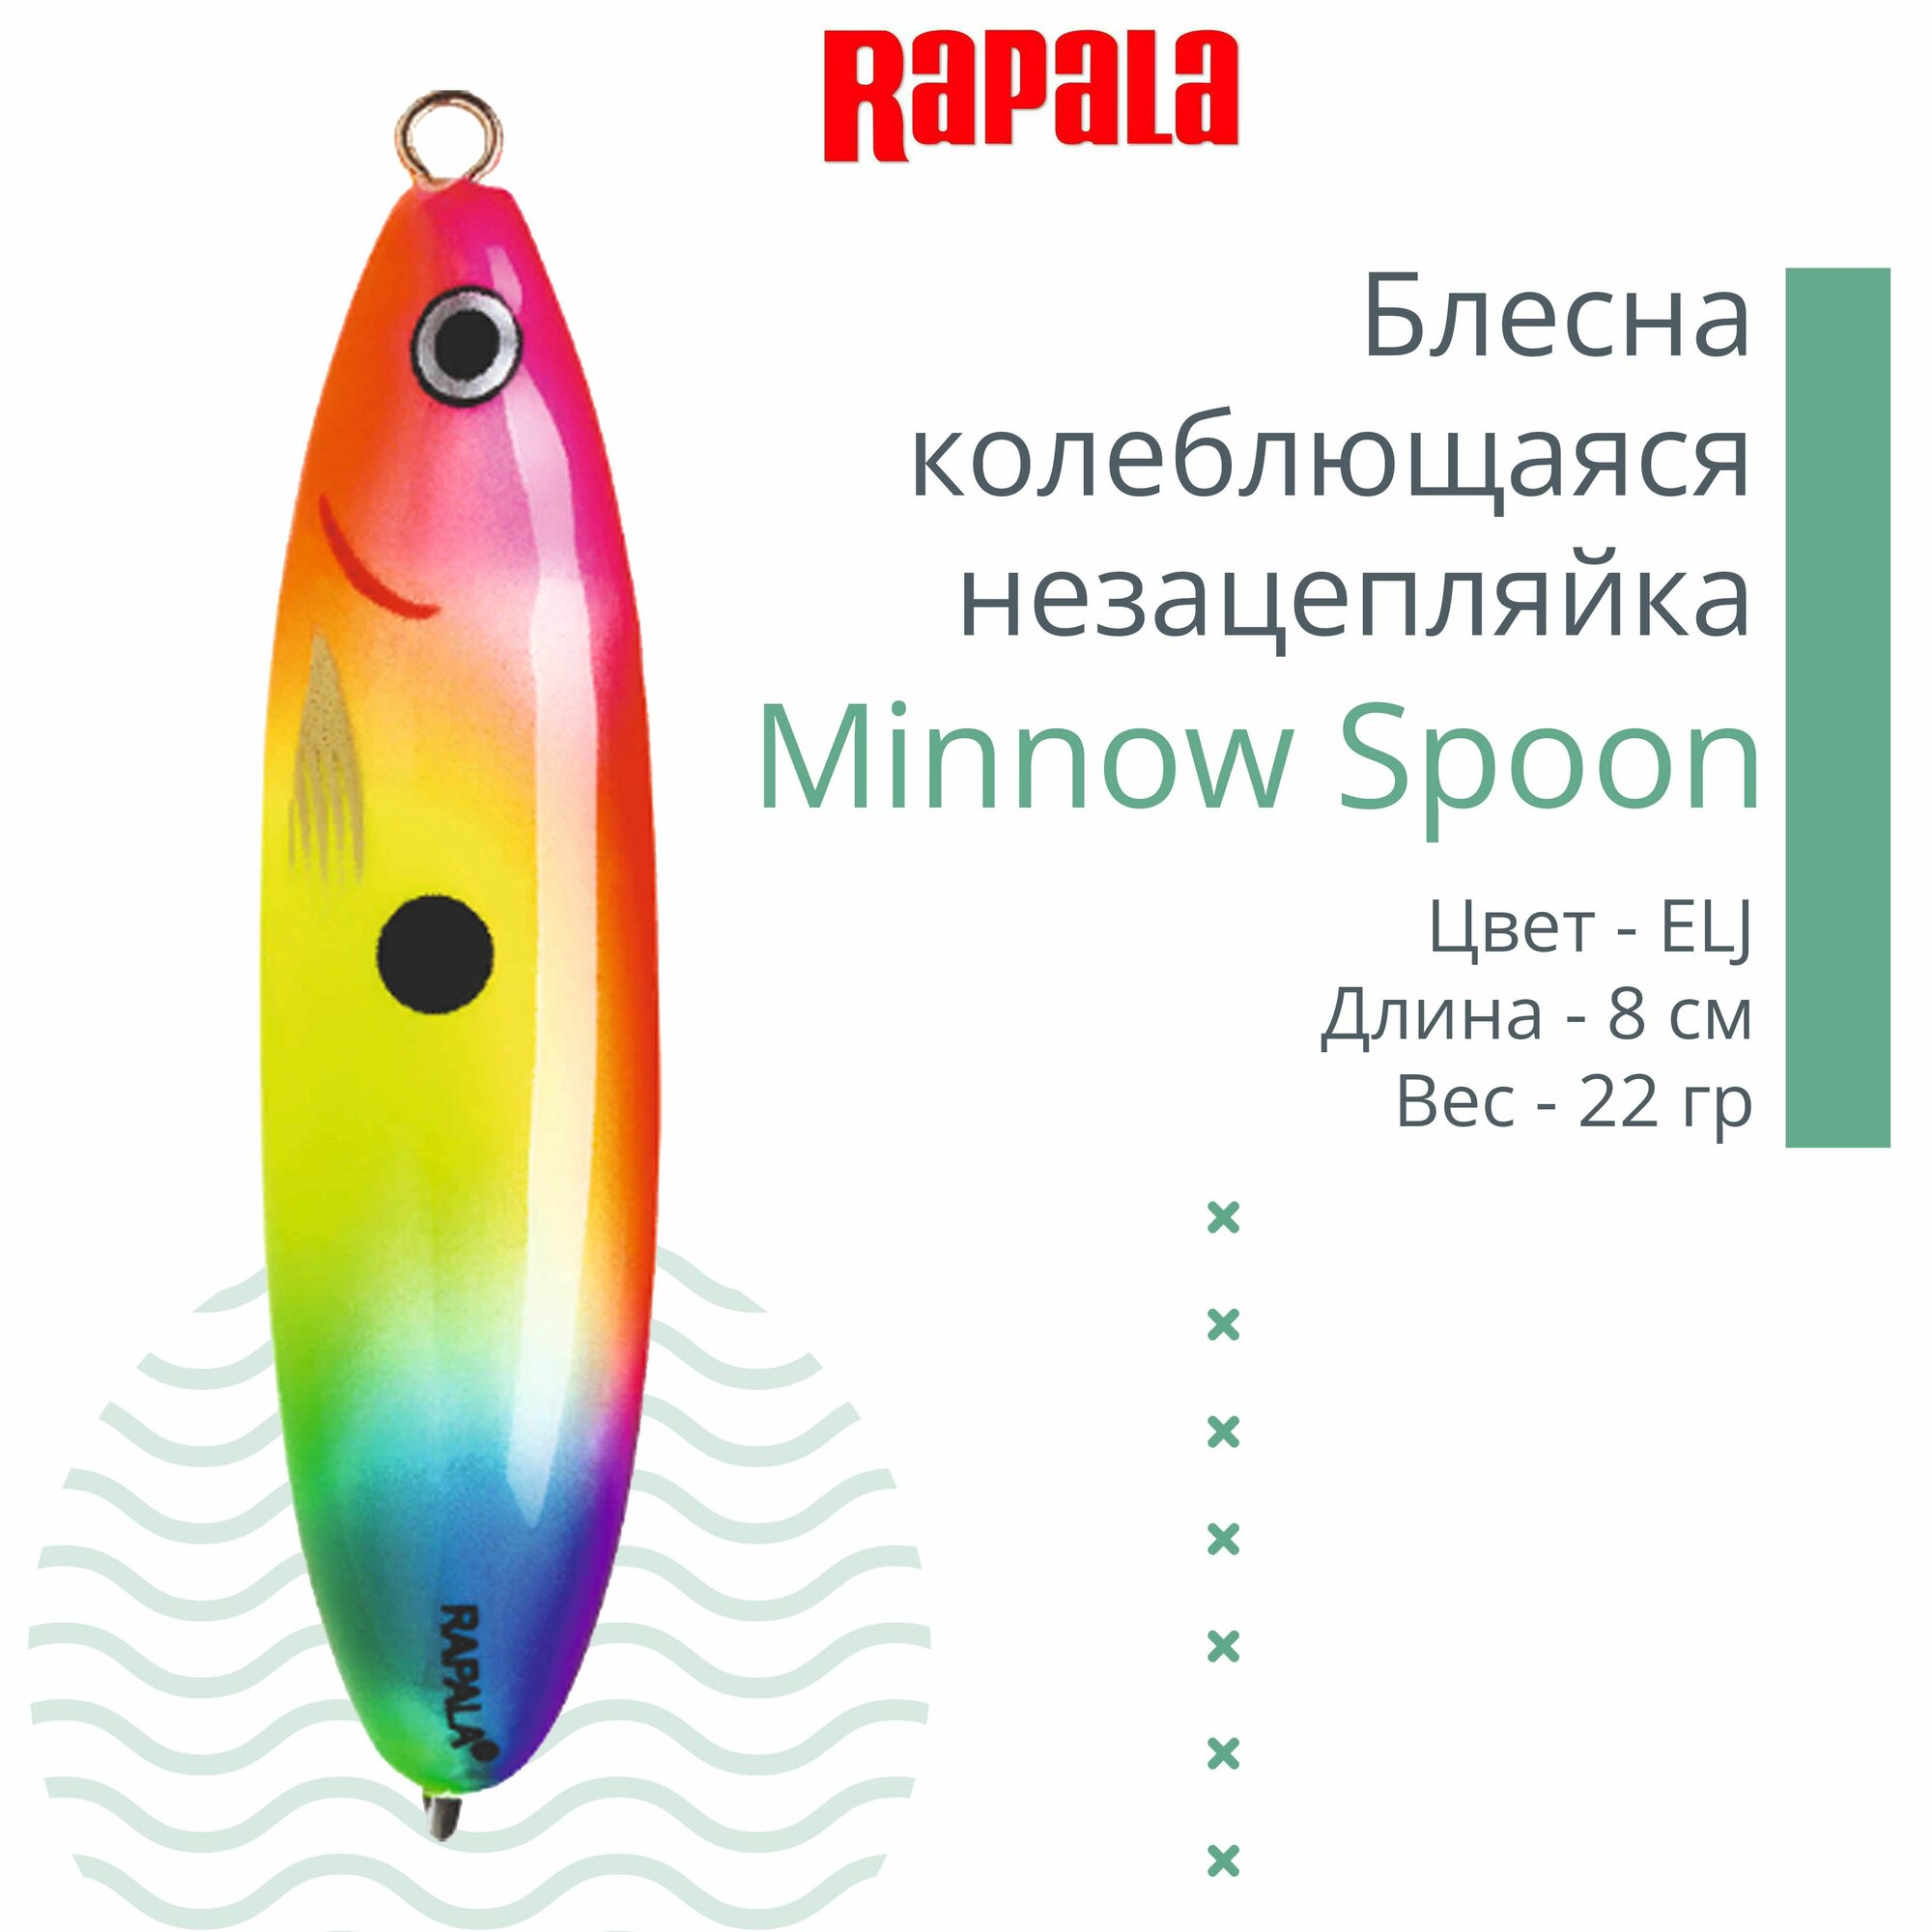 Блесна для рыбалки колеблющаяся RAPALA Minnow Spoon, 8см, 22гр /ELJ (незацепляйка)